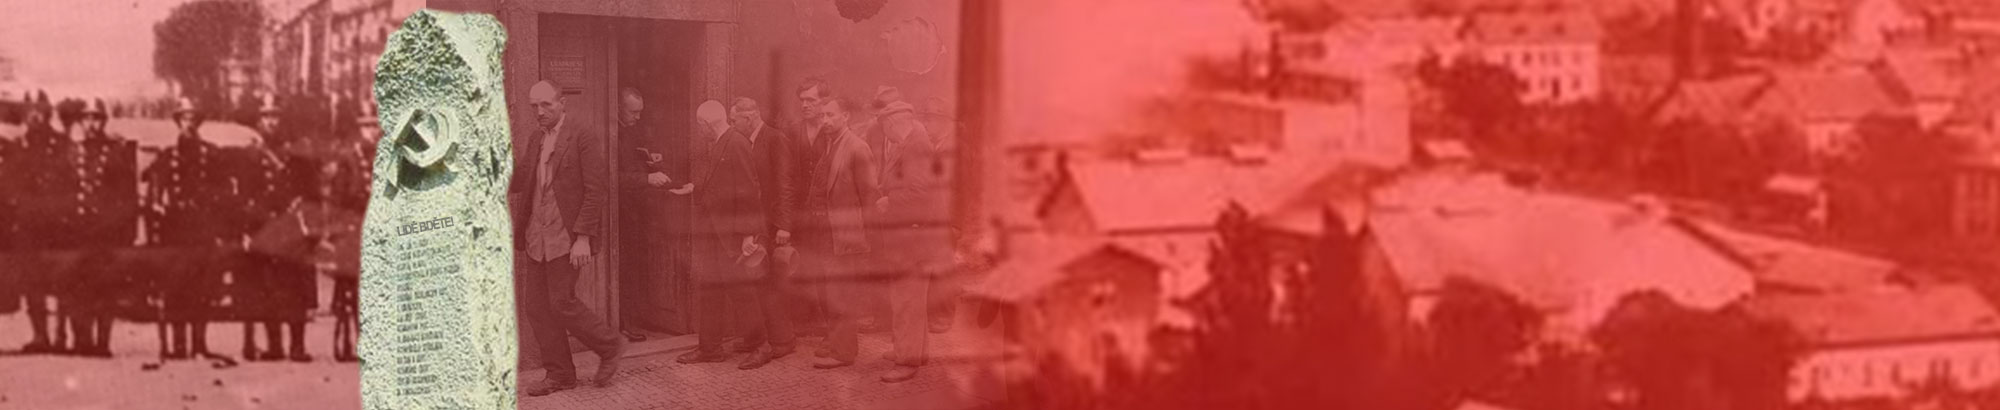 rudé letnice, 1930, komunisté, střelba do dělníků, ksčm, praha 5, radotín